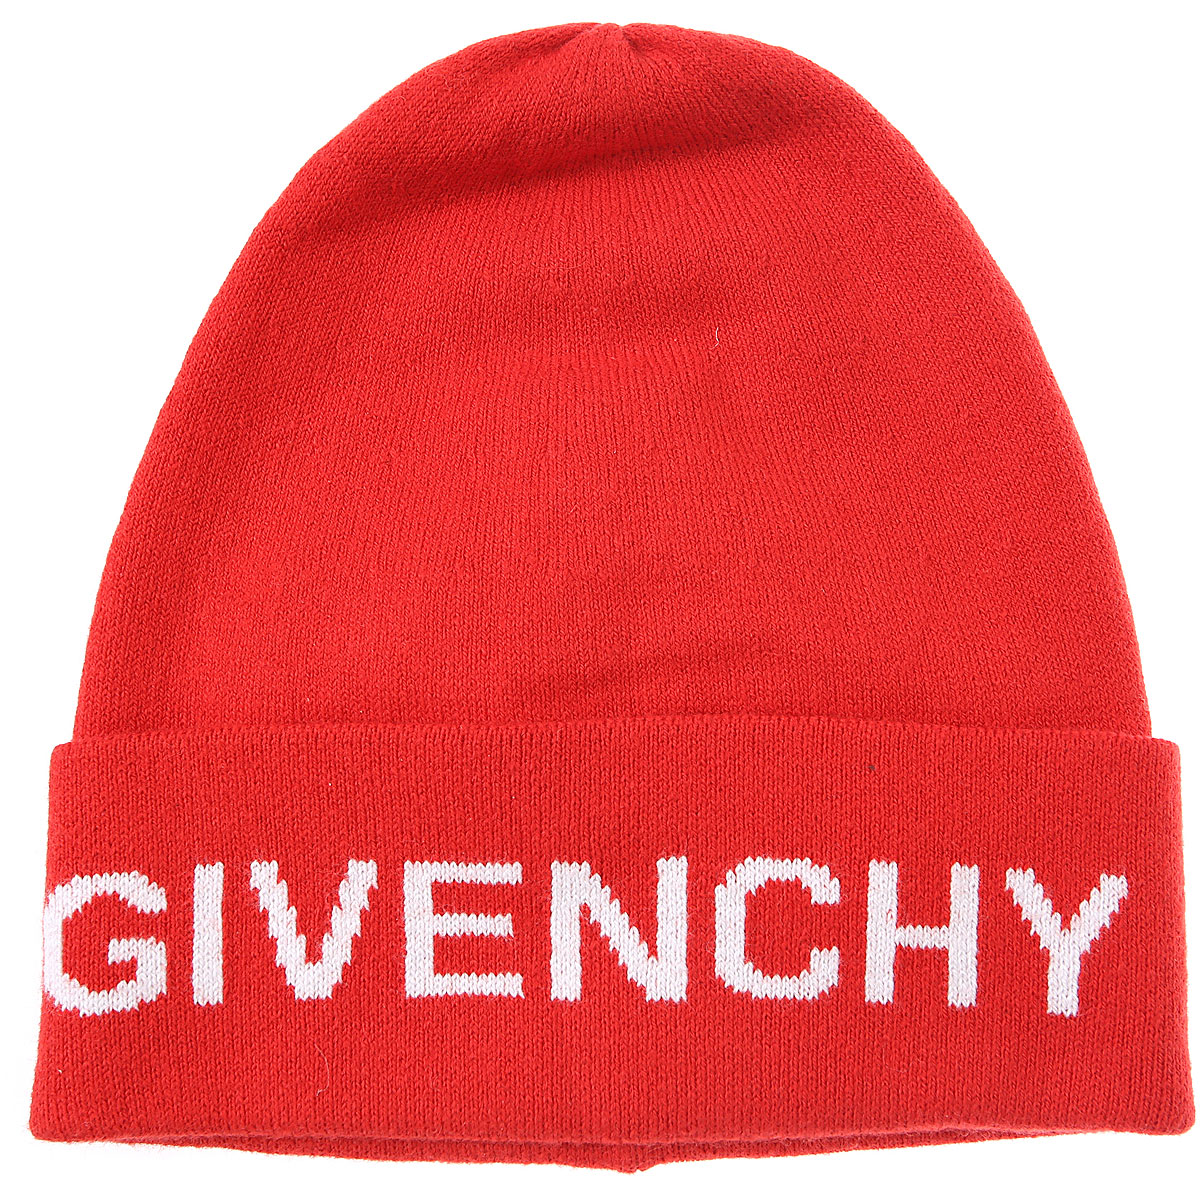 Givenchy Kinder Hut für Jungen Günstig im Sale, Rot, Baumwolle, 2017